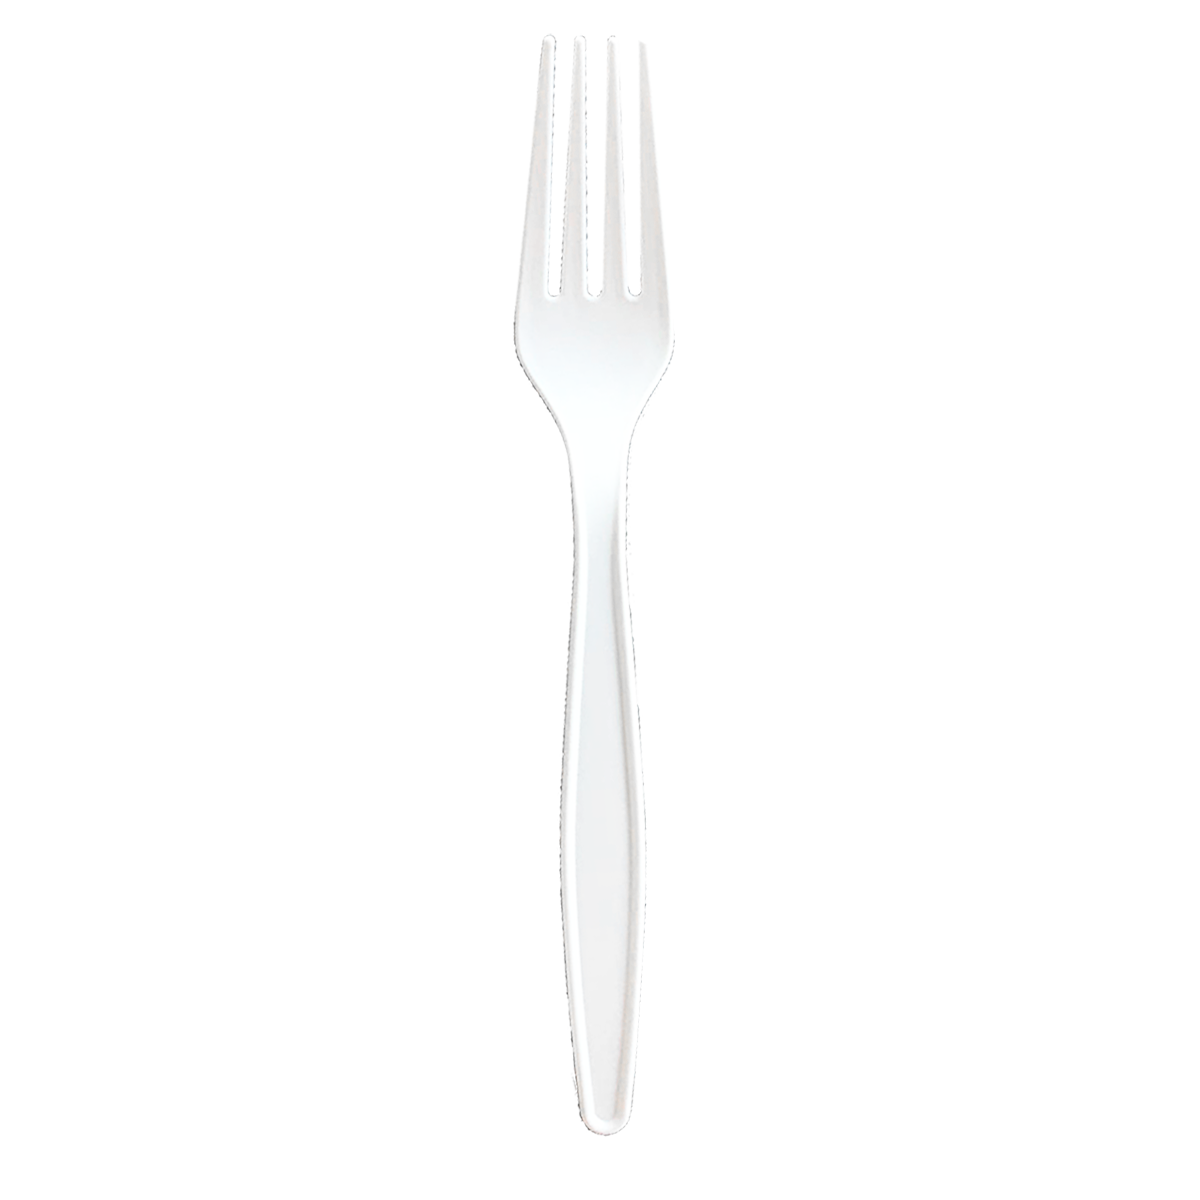 Fork 7